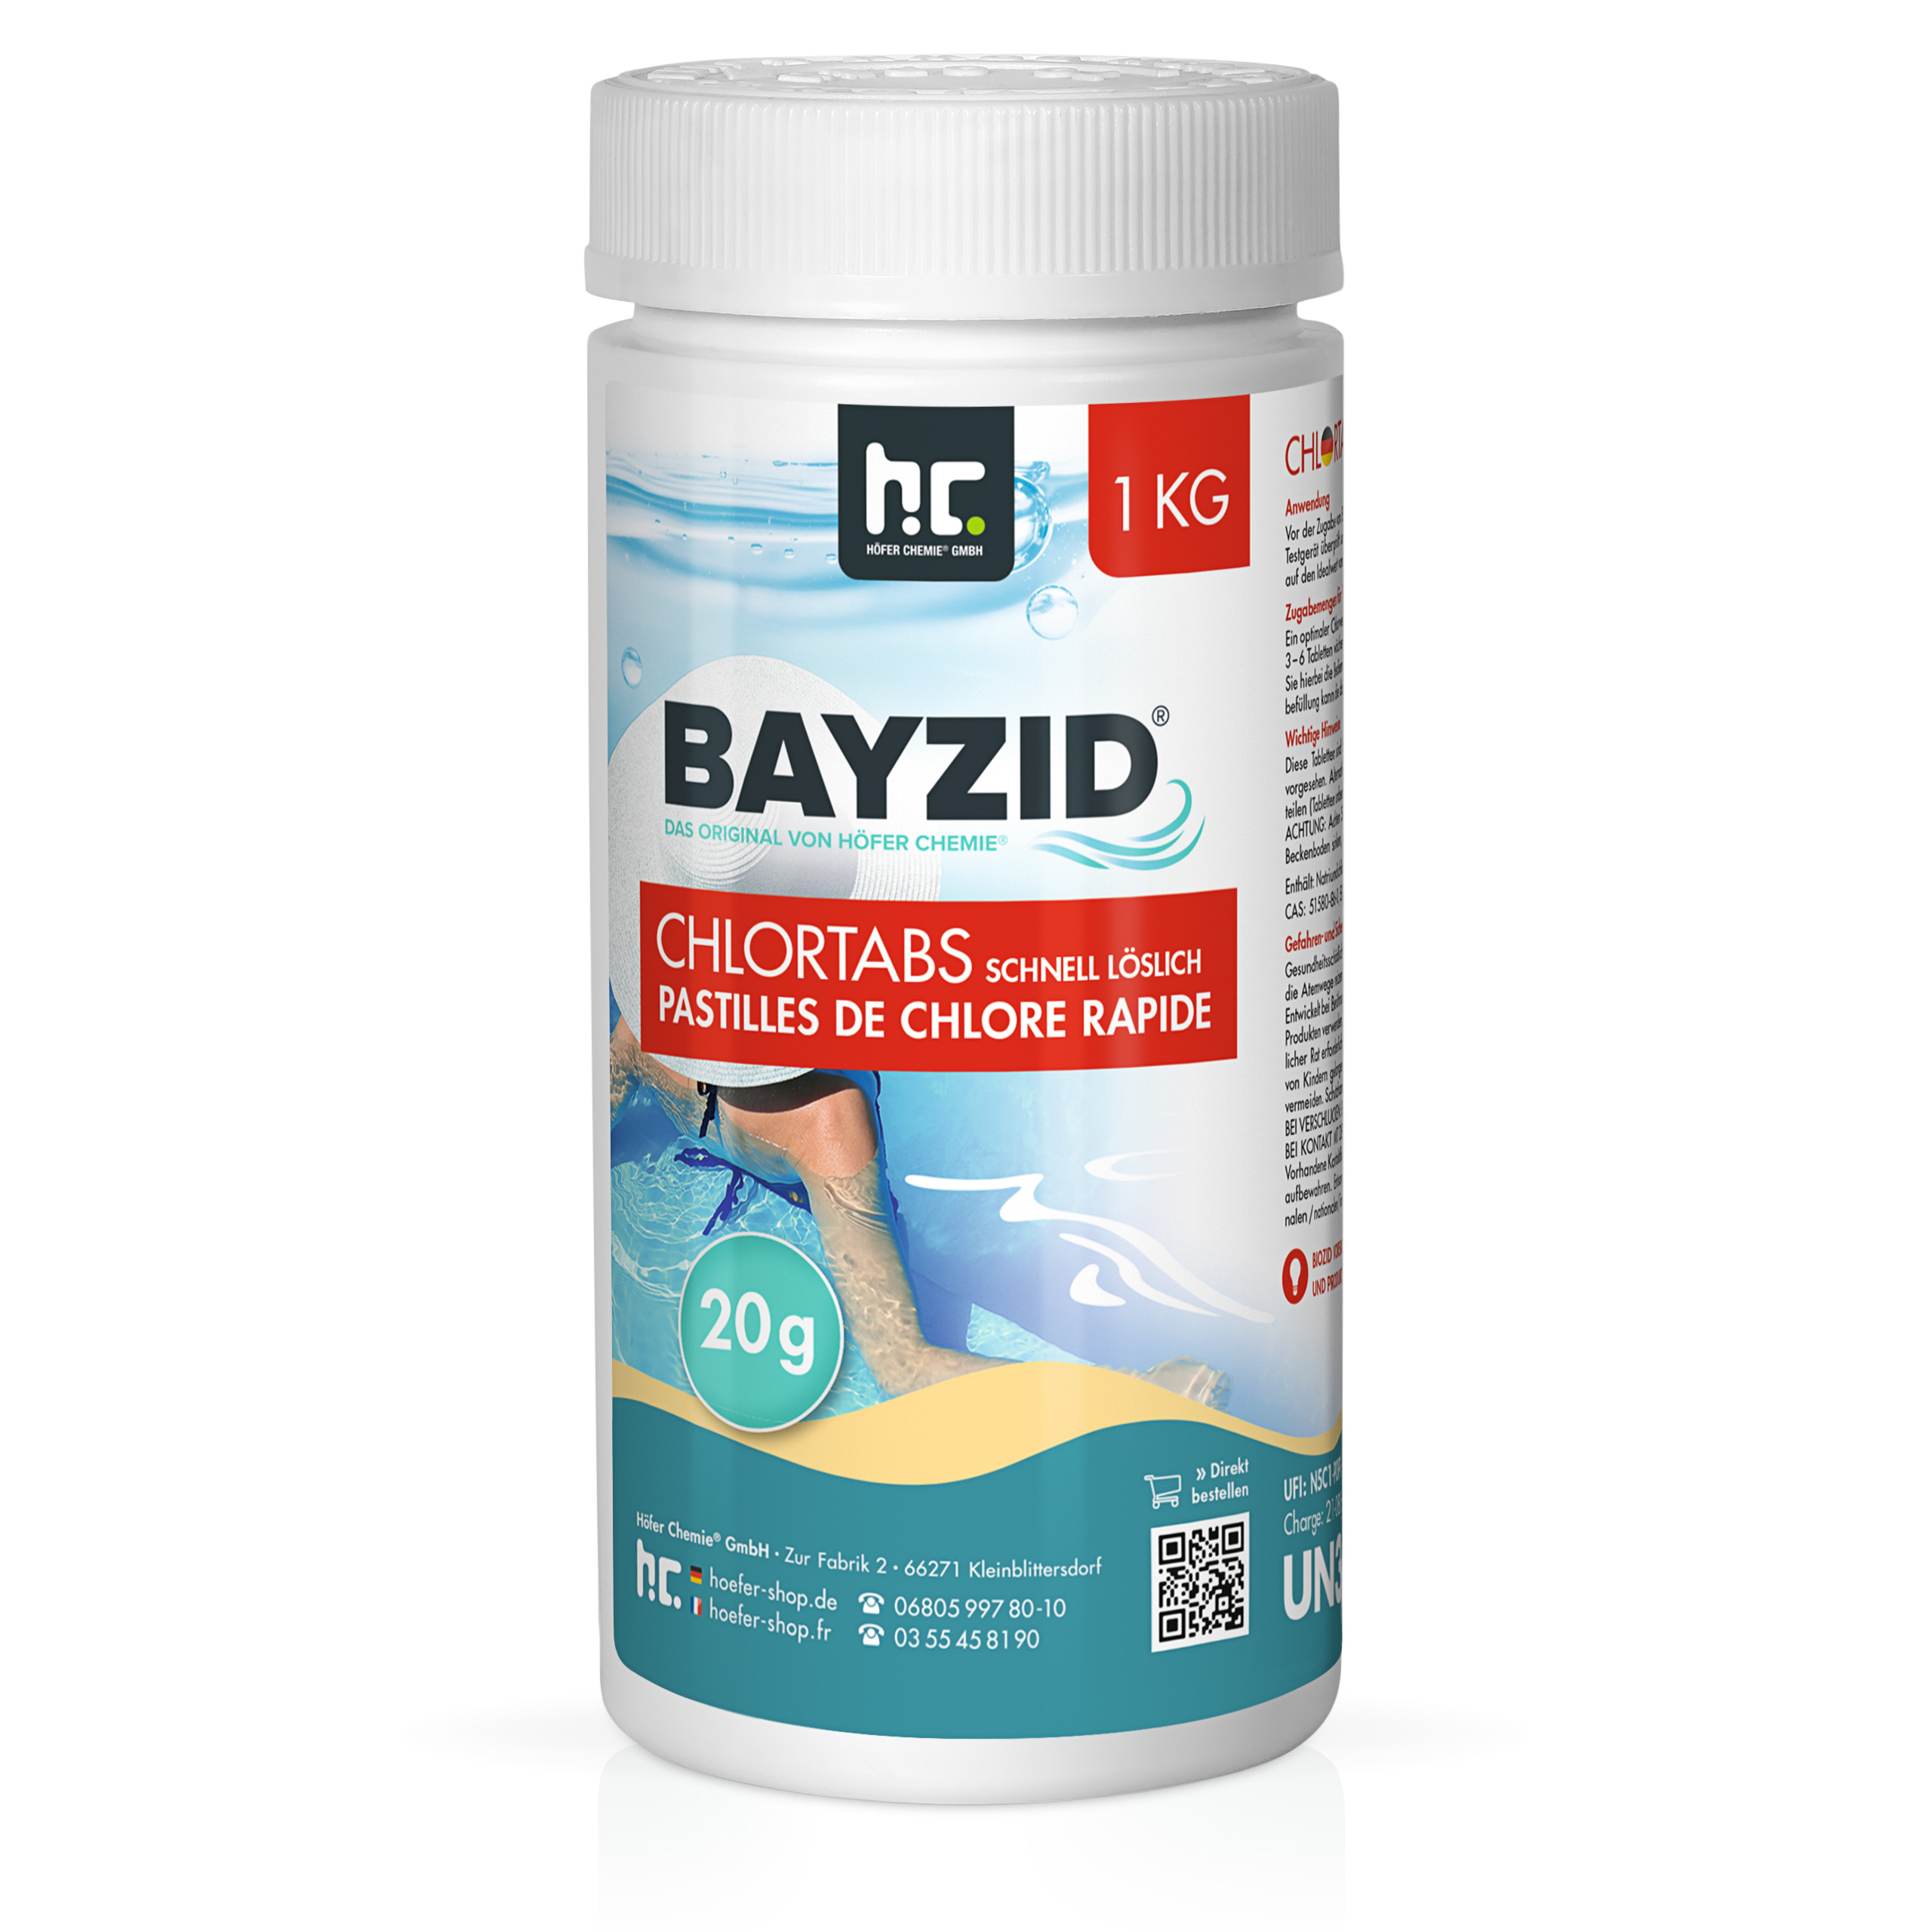 1 Kg Bayzid® Pastilles de chlore choc (20g)